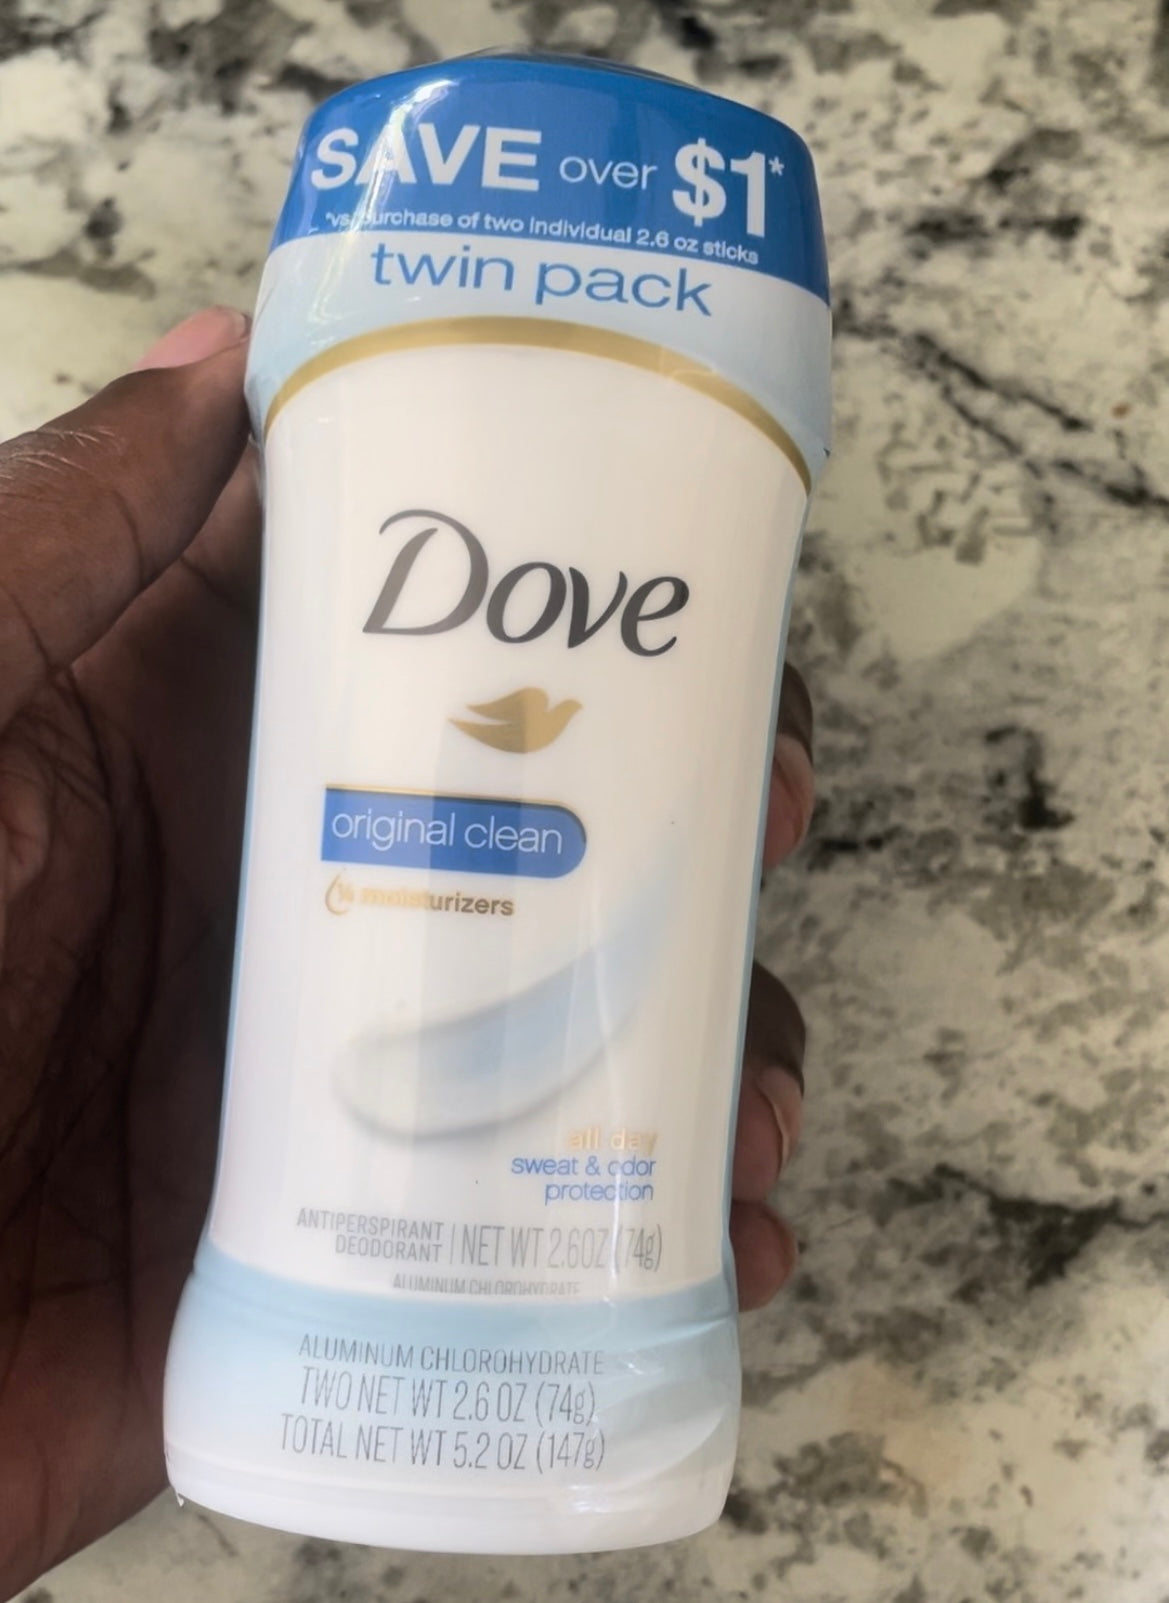 Dove Original Clean Deodorant